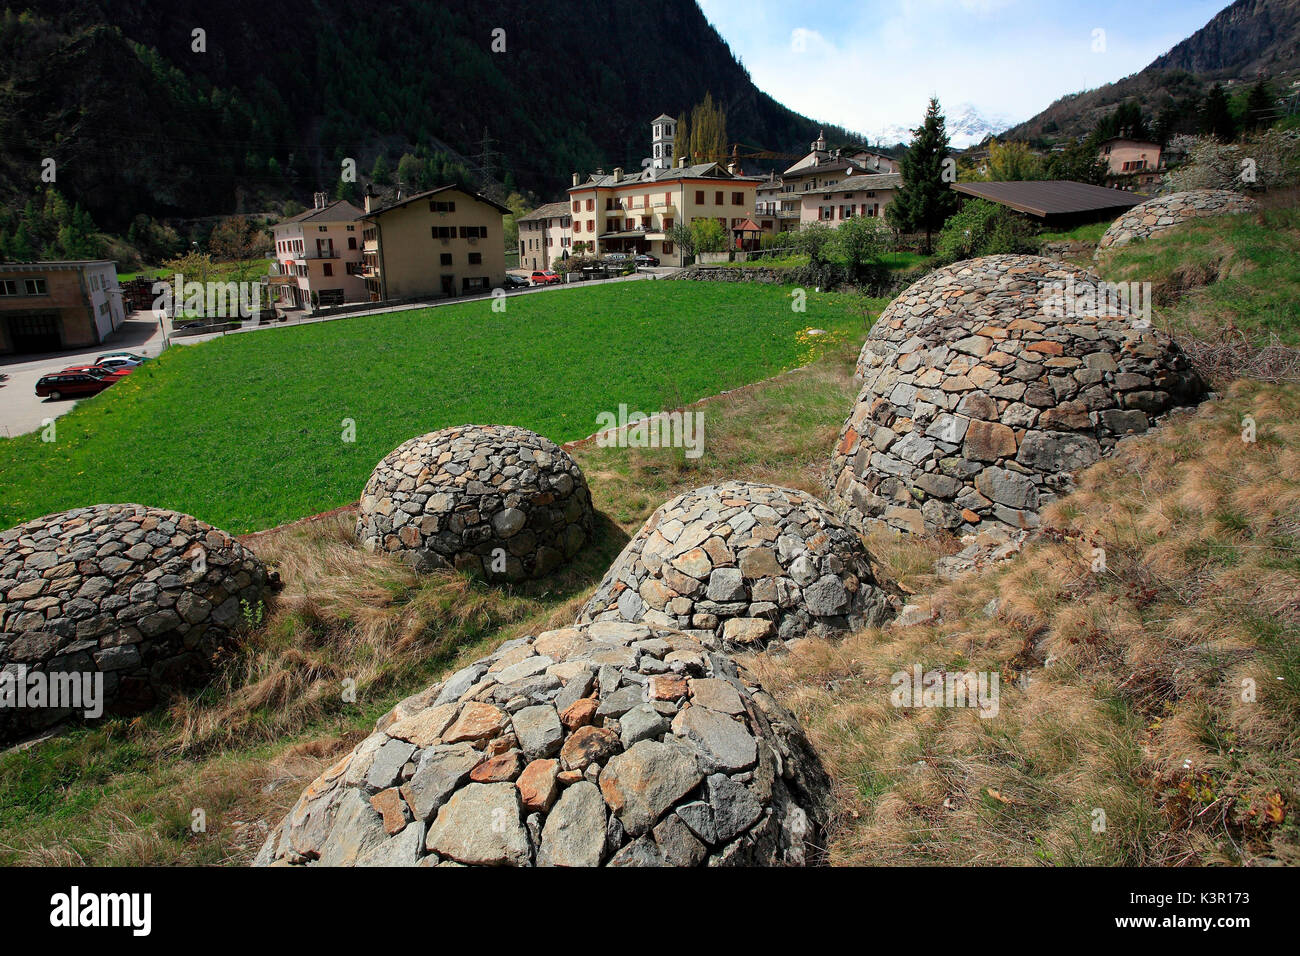 La vieille et 'typique' crotti, grottes faites de roches, dans les Grisons, le Val Poschiavo, Suisse Europe Banque D'Images